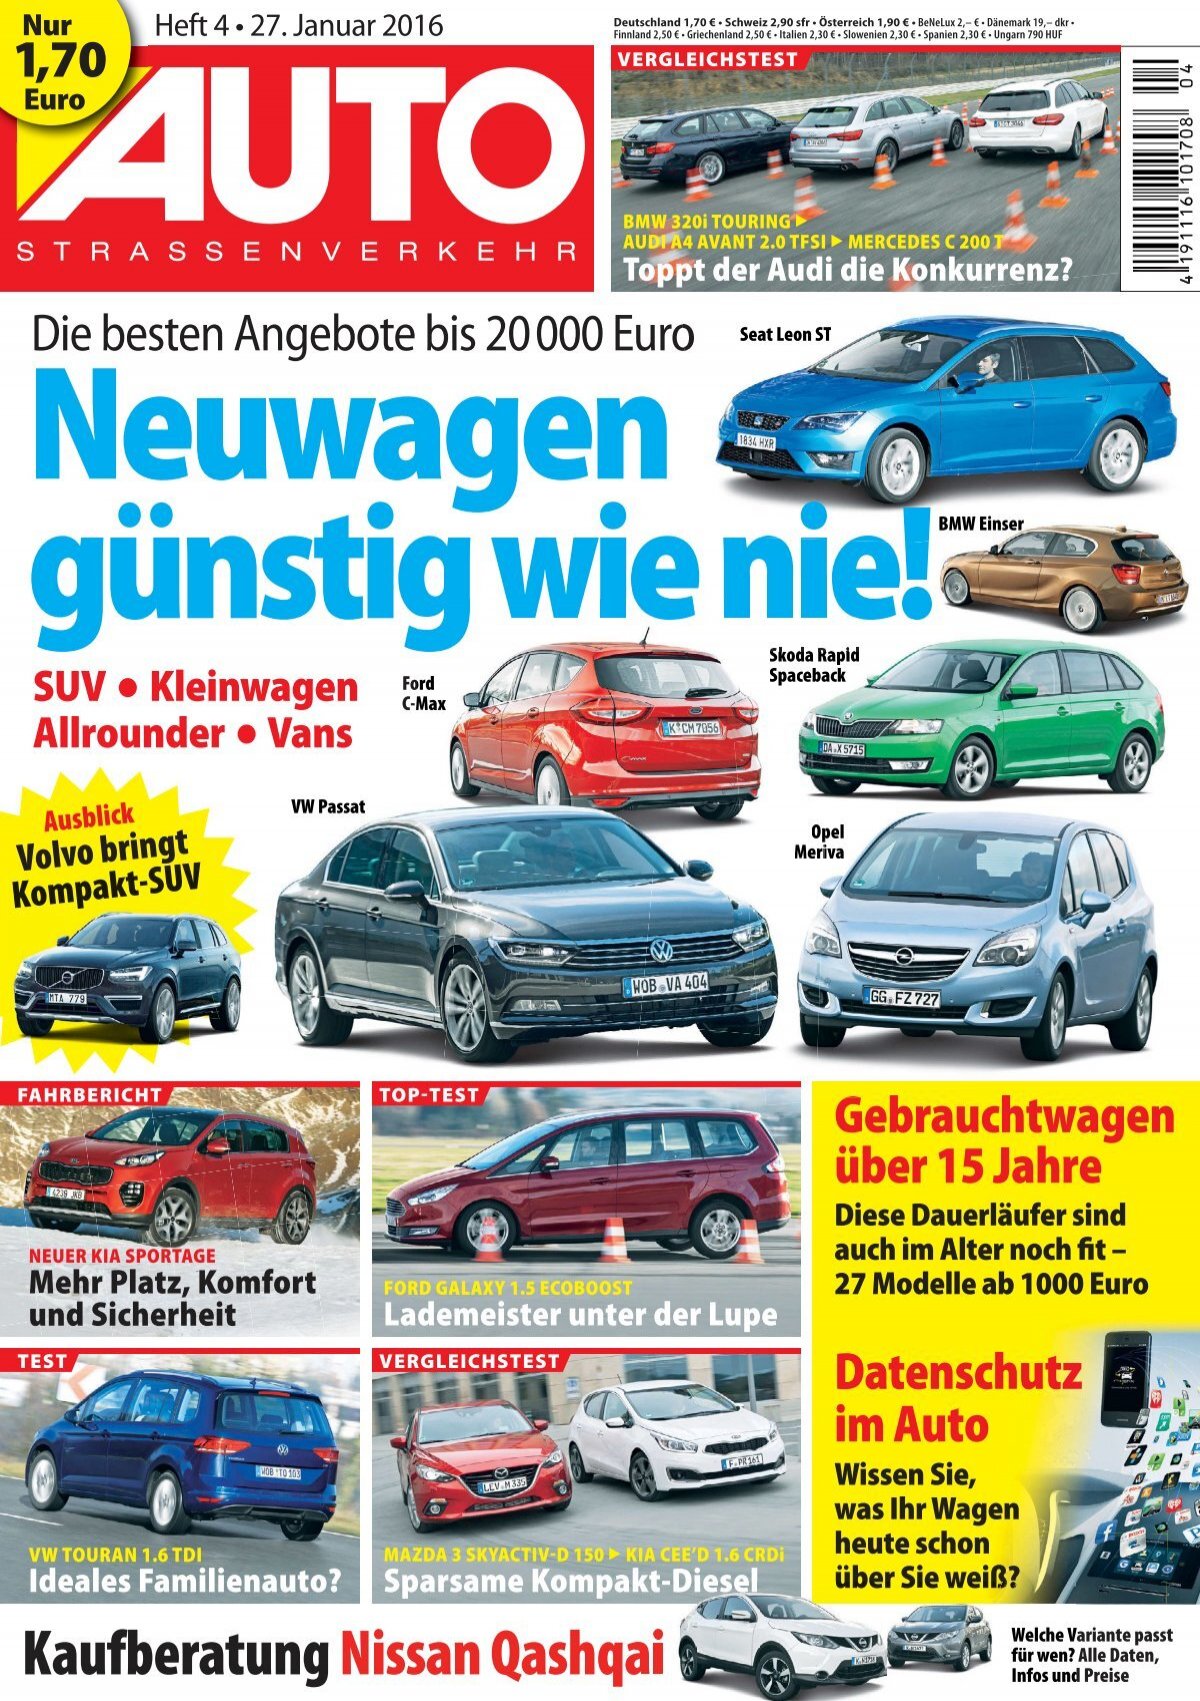 VW Sharan 7N und SEAT Alhambra 71 - so günstig wie möglich als Neuwagen -  Urlaub